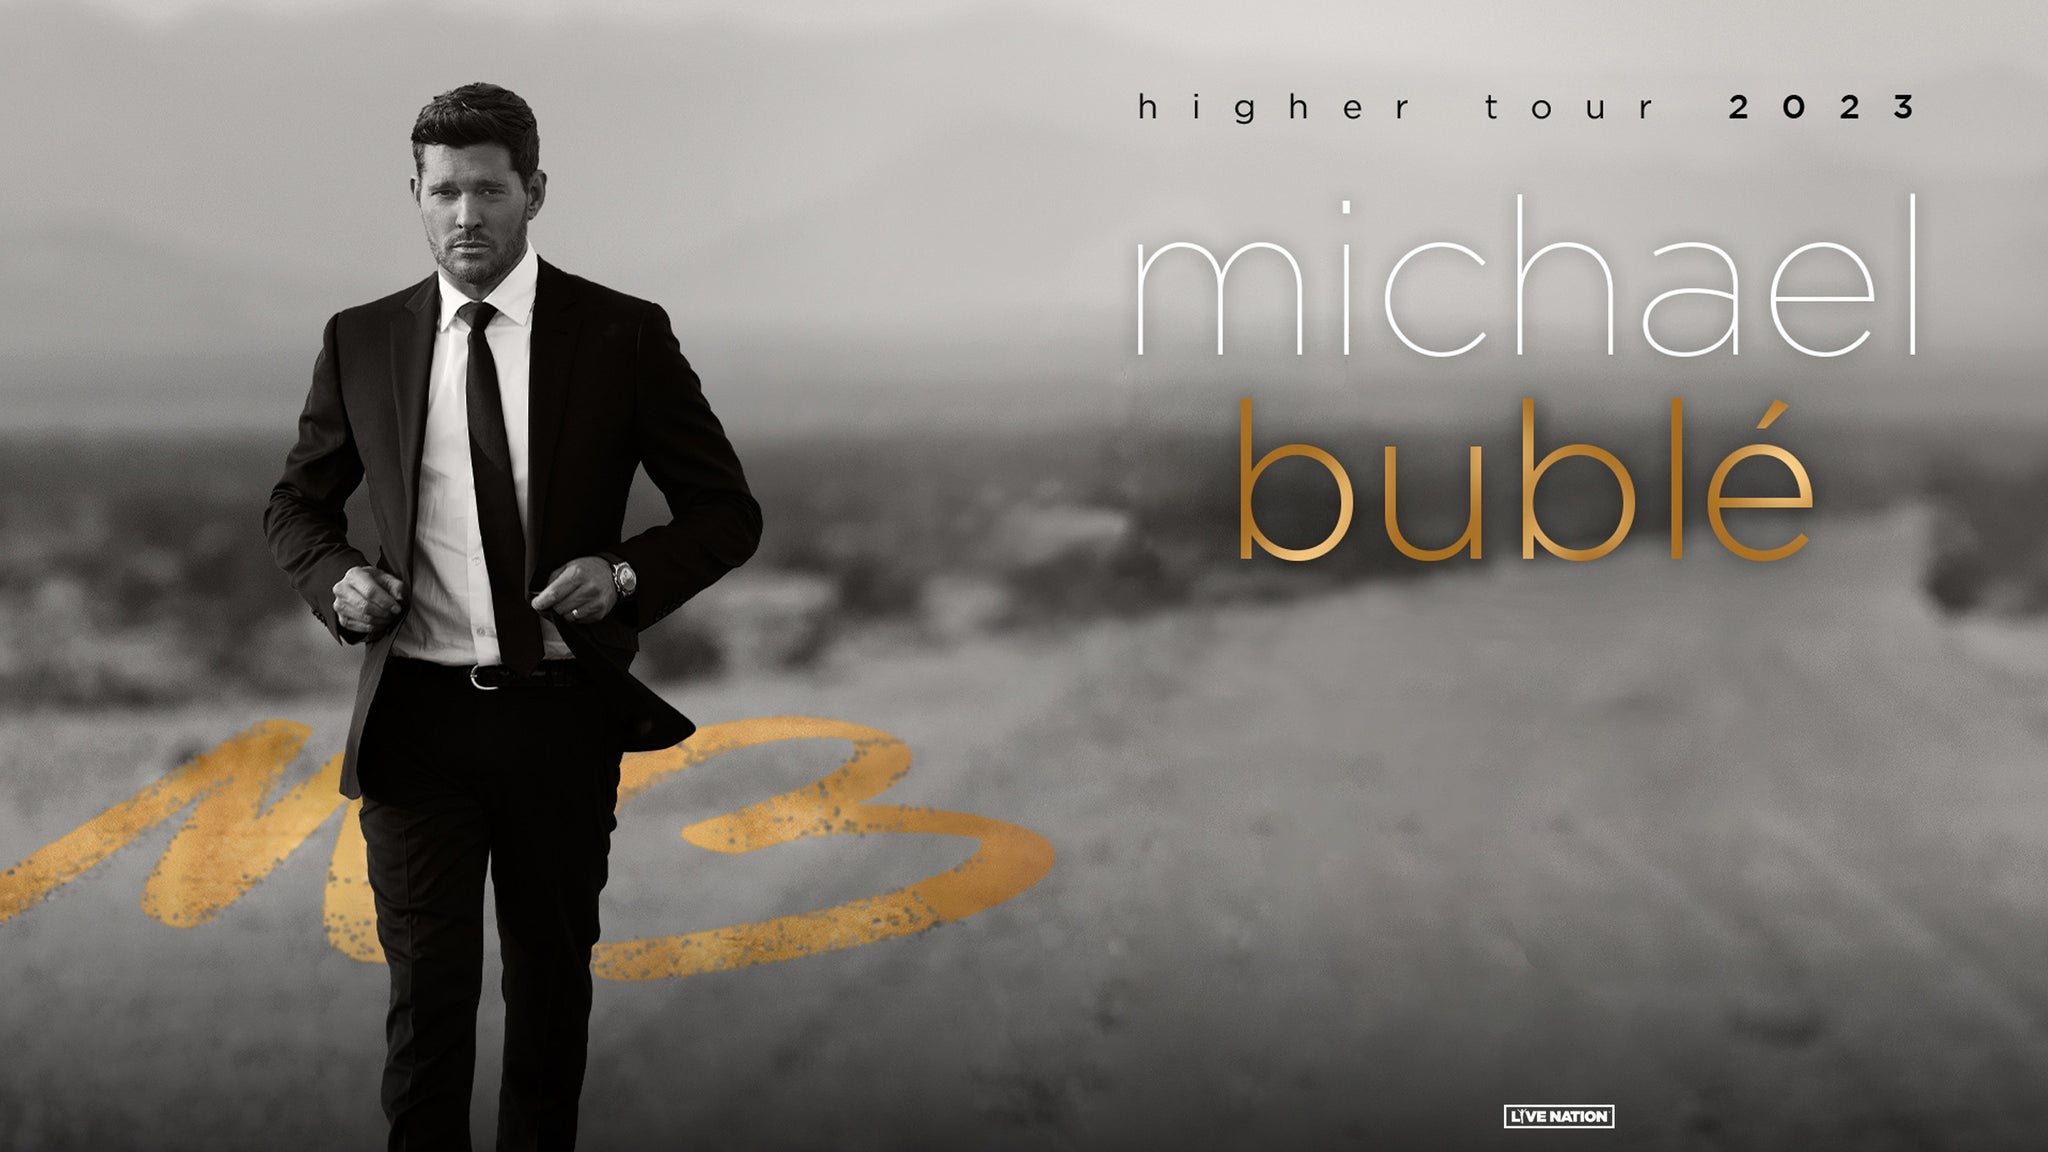 Michael Bublé | Higher Tour 2023